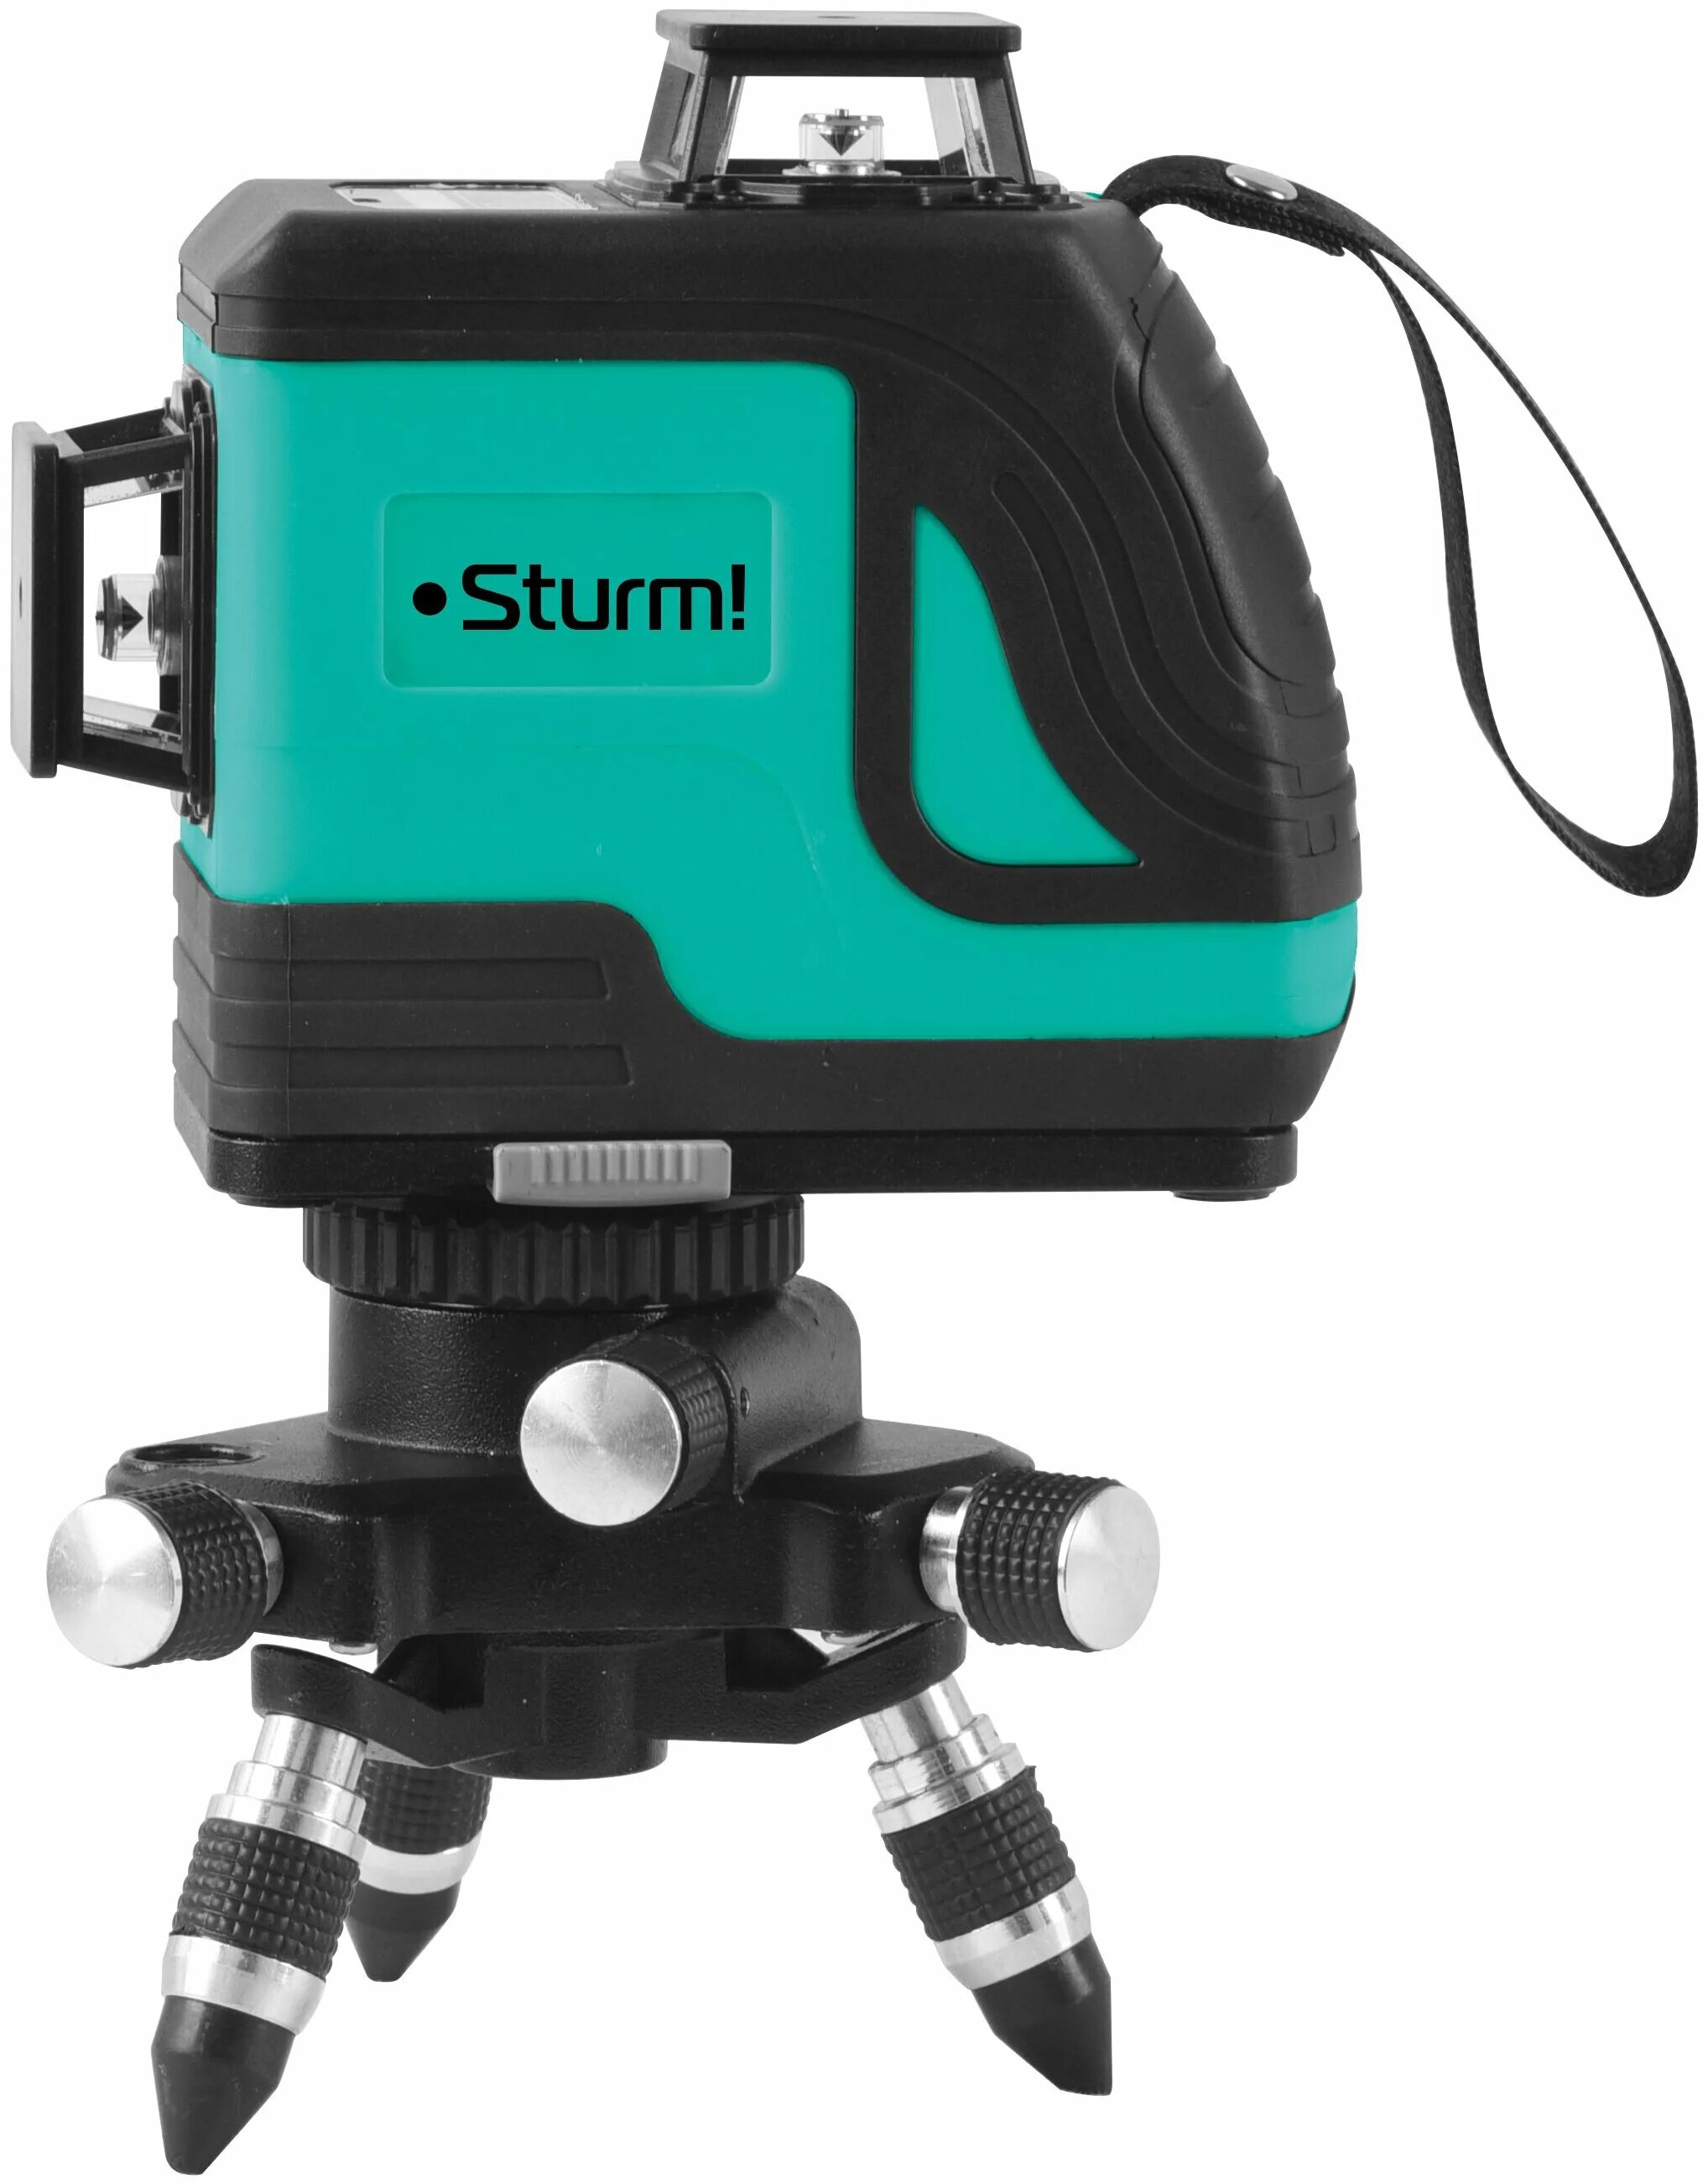 Лазерный уровень Sturm 4010-10-al. Sturm! 4010-14-Al. Уровень Sturm. Sturm 4010-13-al.